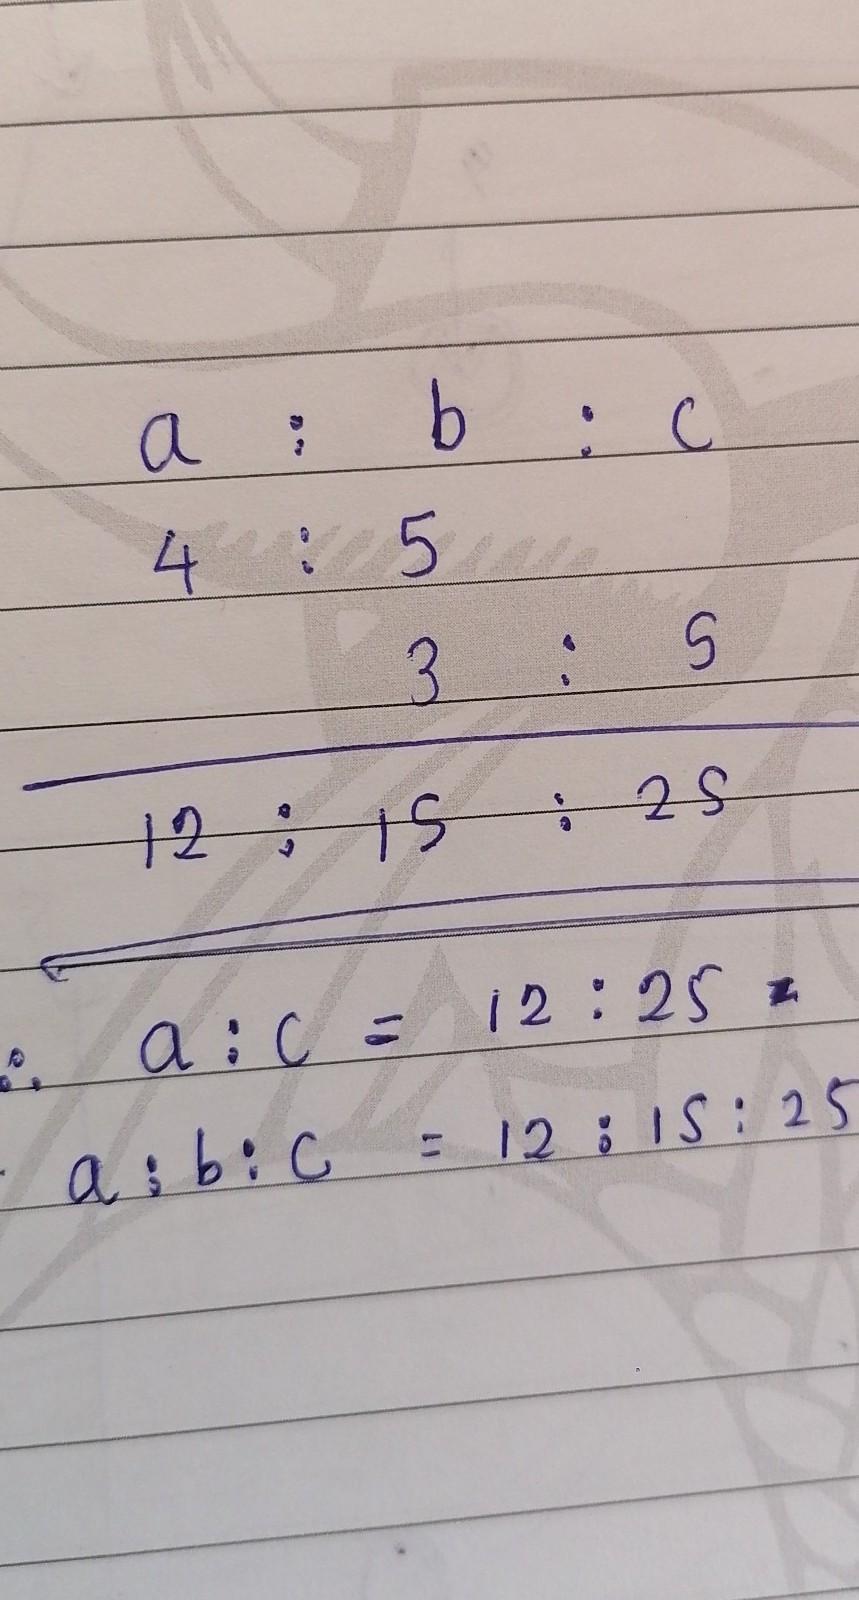 Find A:c And A:b:c Of The Following B) A:b = 4:5,b:C = 3:5